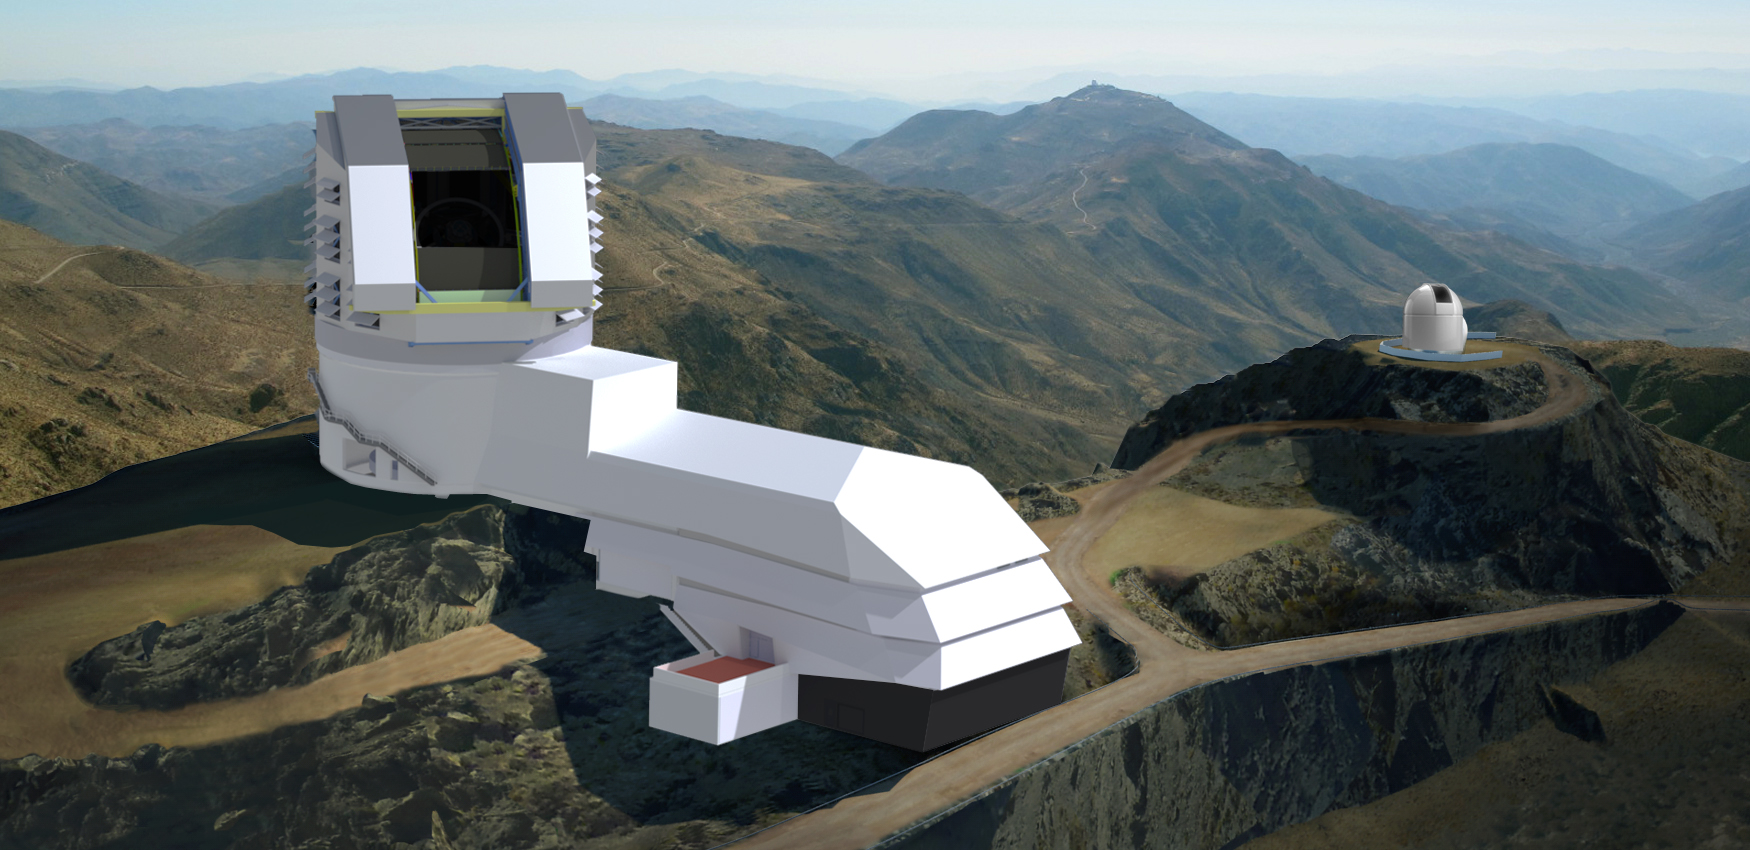 Ein digitales Bild eines weißen Gebäudes mit einem verchromten Teleskop auf der Spitze eines grasbewachsenen Hügels.  Auf einem niedrigeren Hügel in der Ferne befindet sich auch ein kleineres Observatorium mit weißer Kuppel.